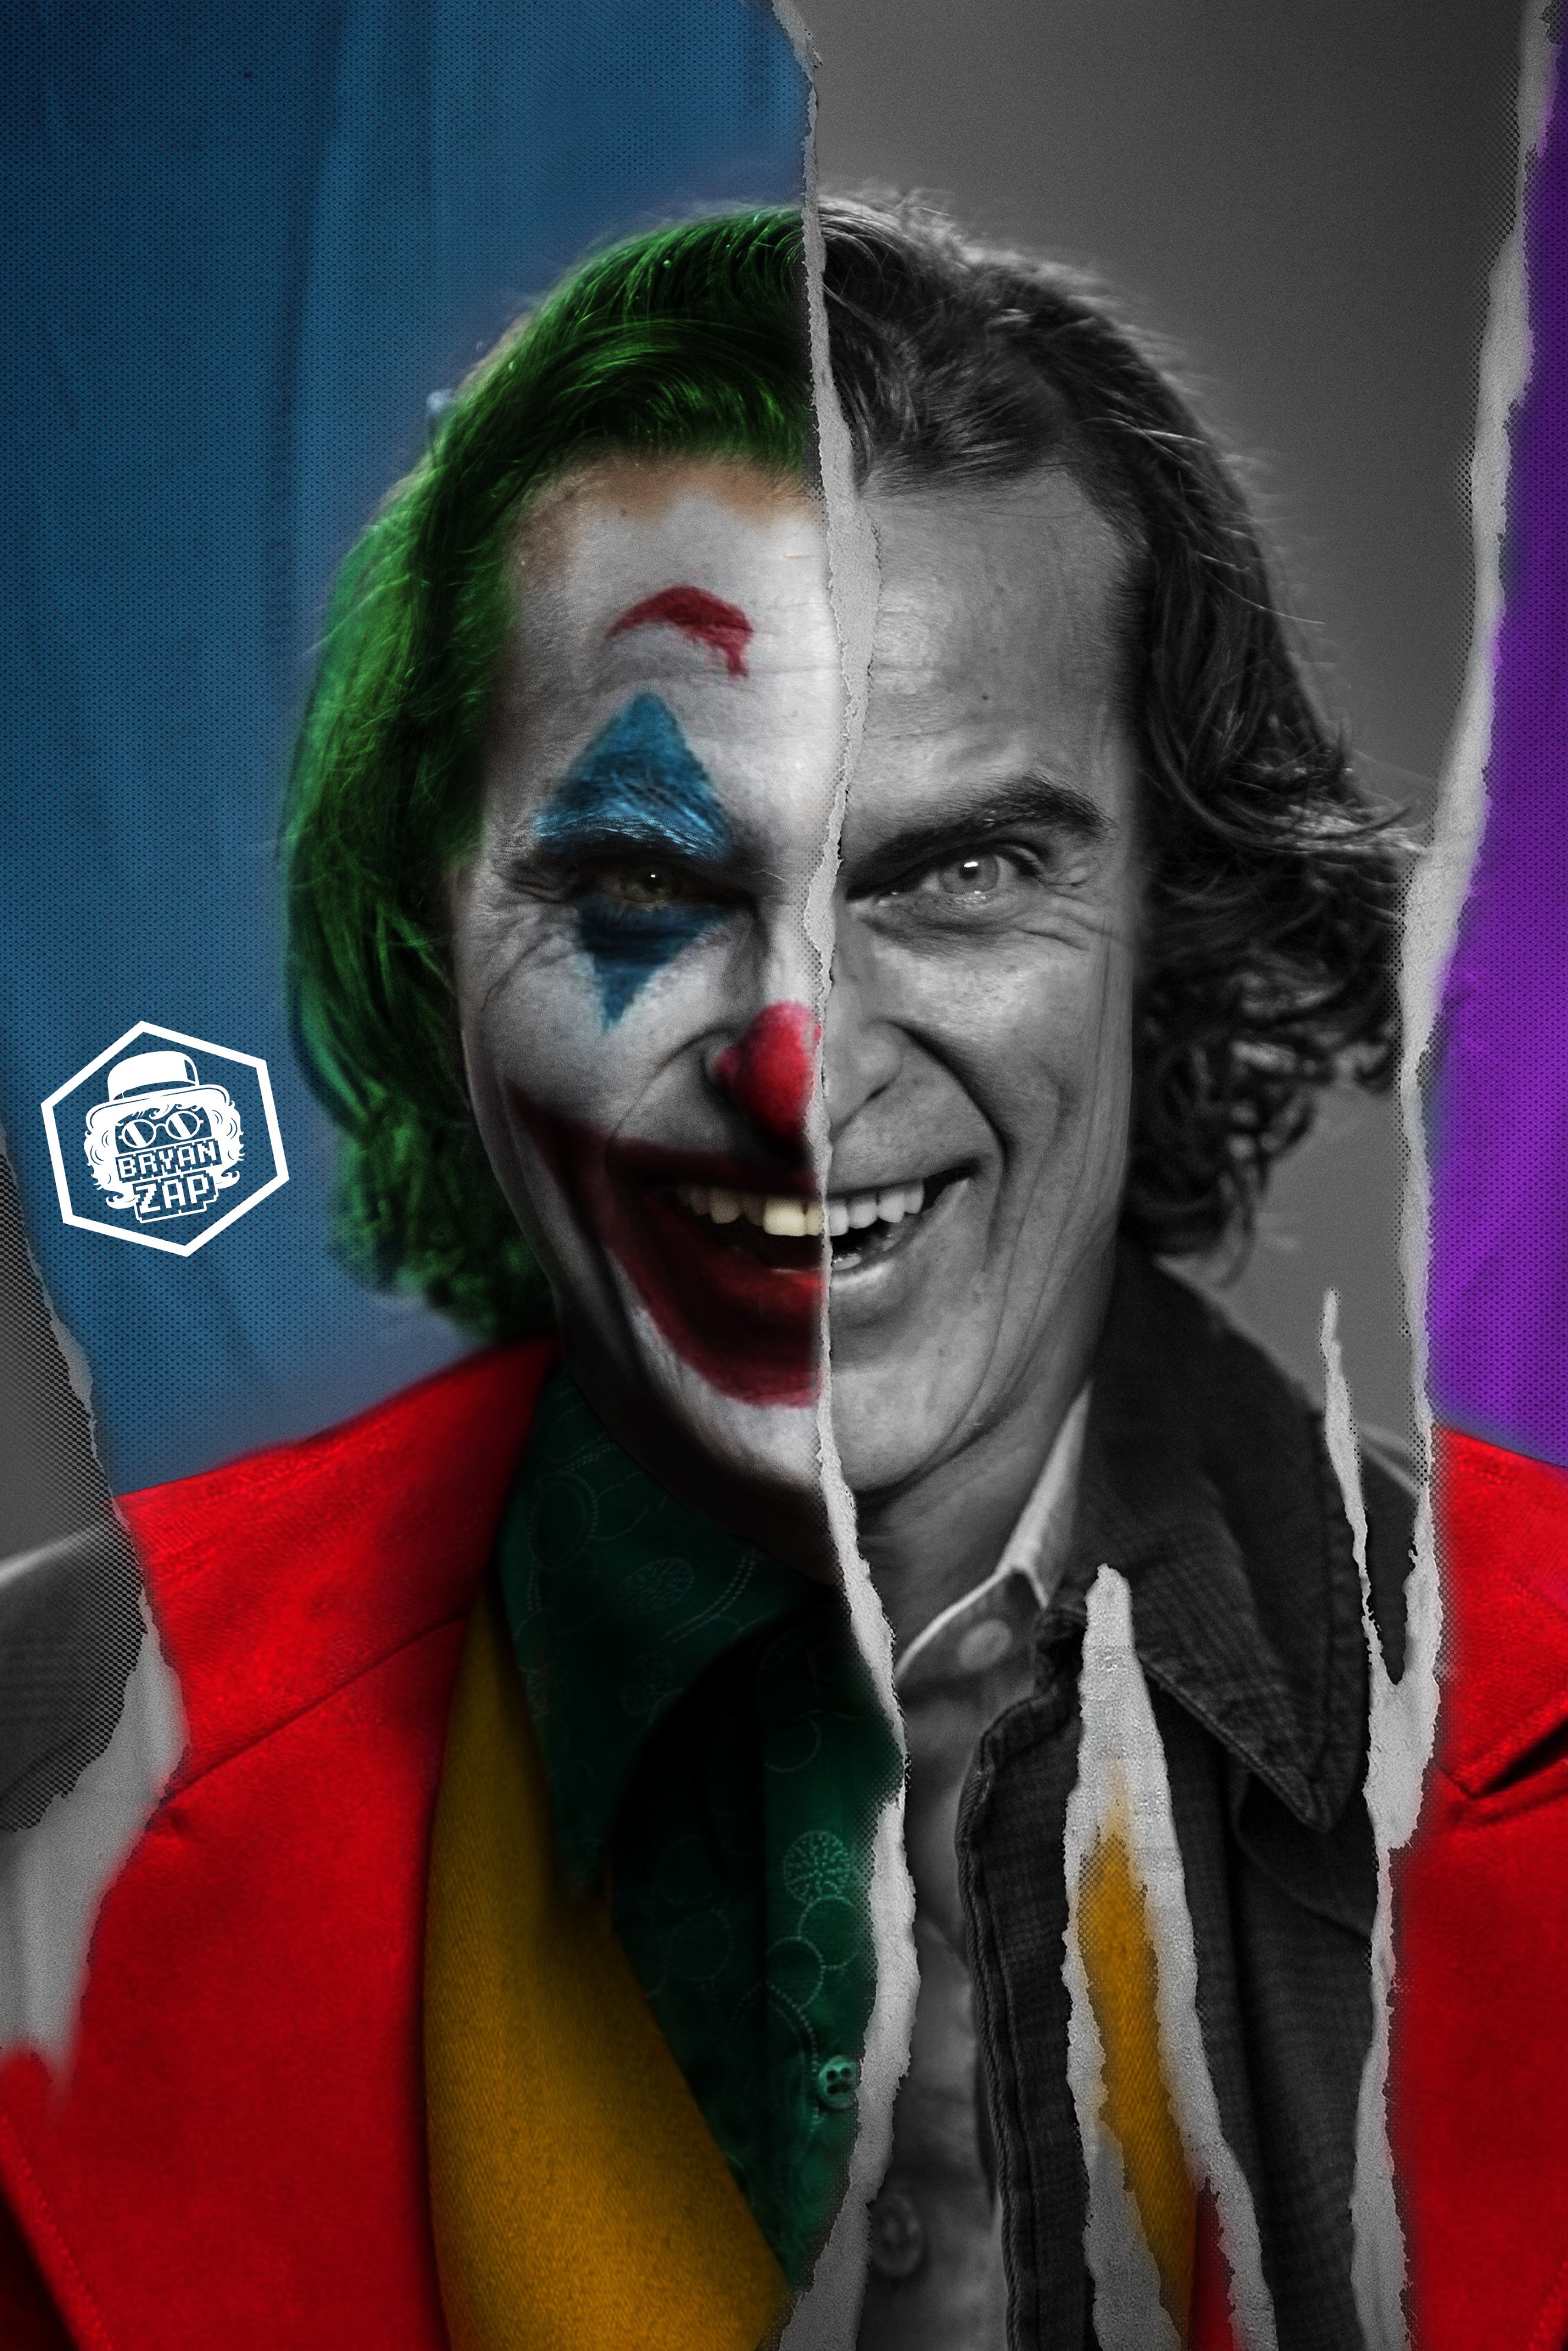 Phim Joker 2019  Hỗn loạn và ám ảnh  Khi những kẻ dưới đáy tầng xã hội  vùng lên phản kháng  catch the world